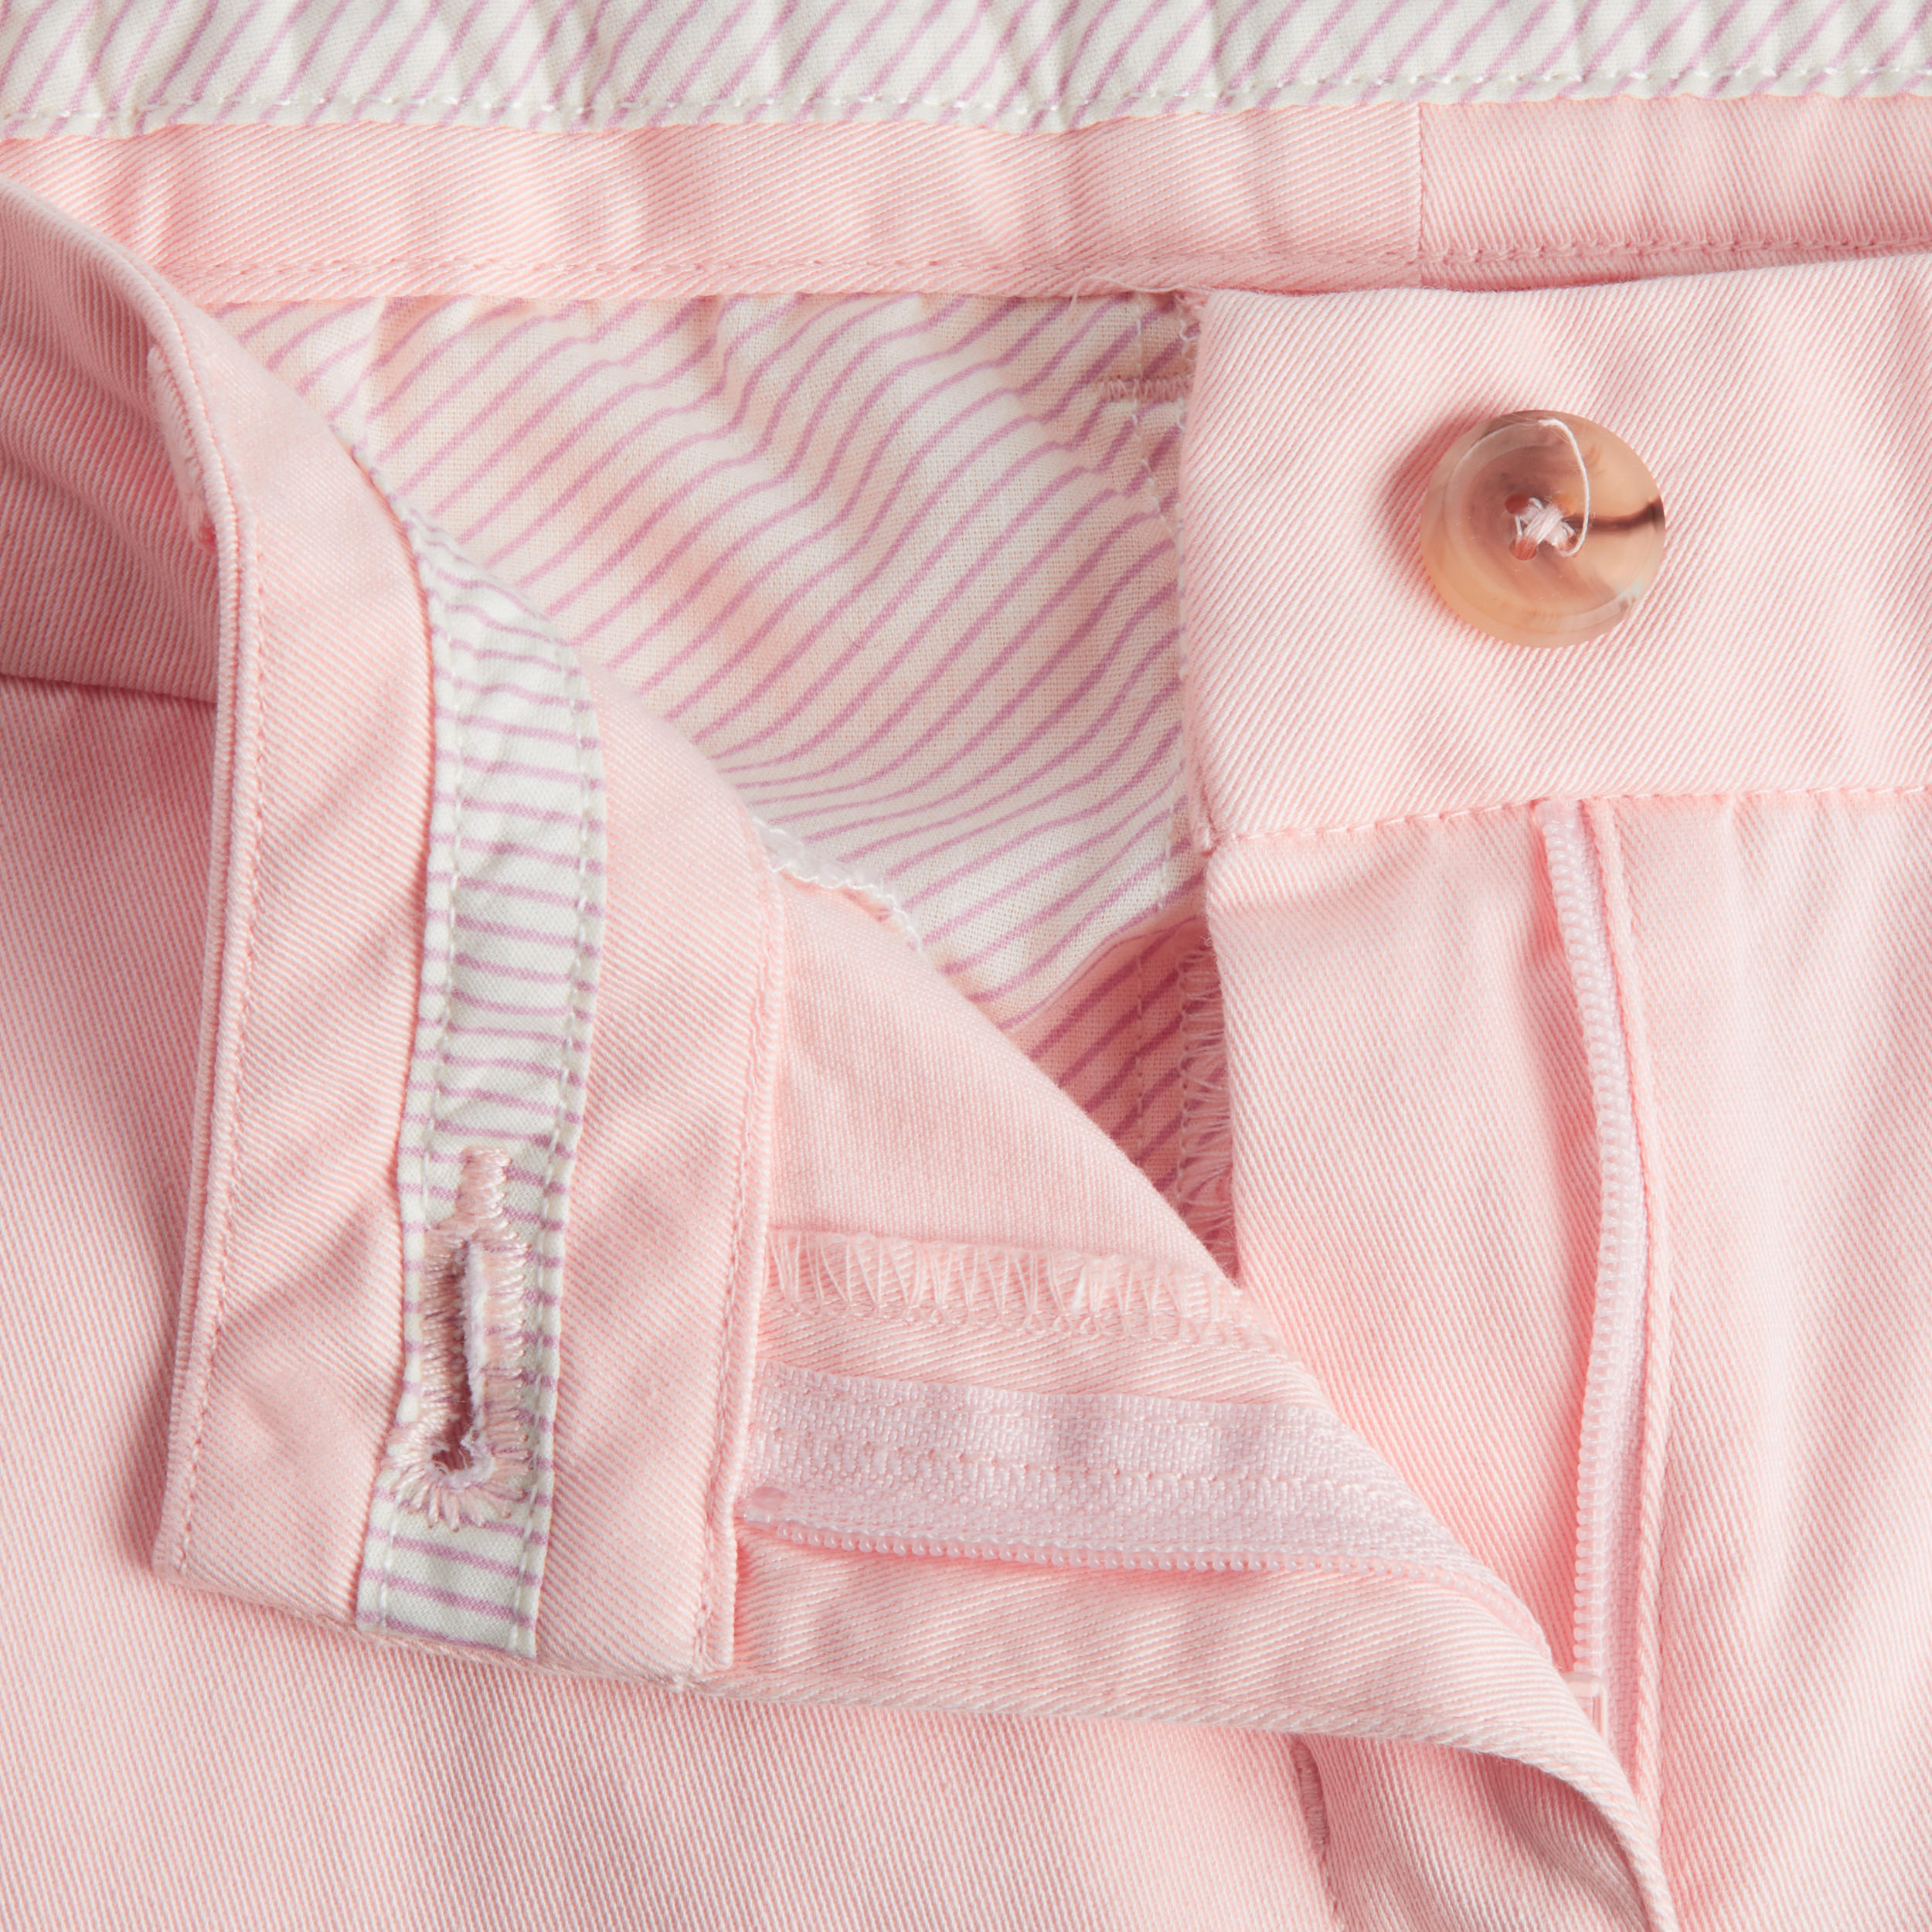 Women's golf chino shorts - MW500 pale pink 3/4